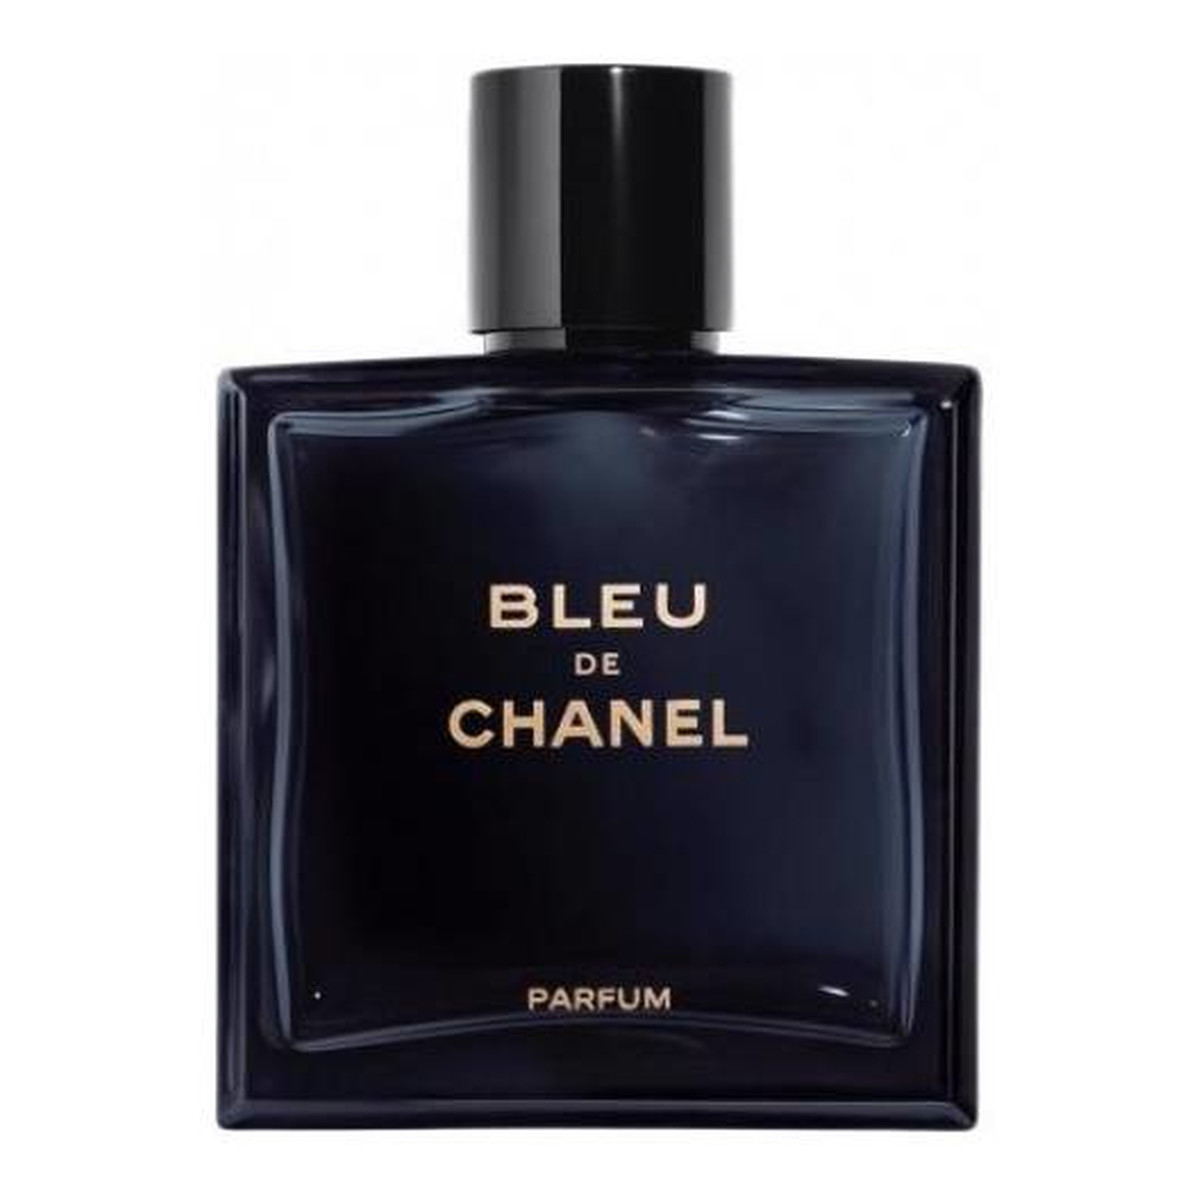 Chanel Bleu de Chanel Perfumy spray 100ml